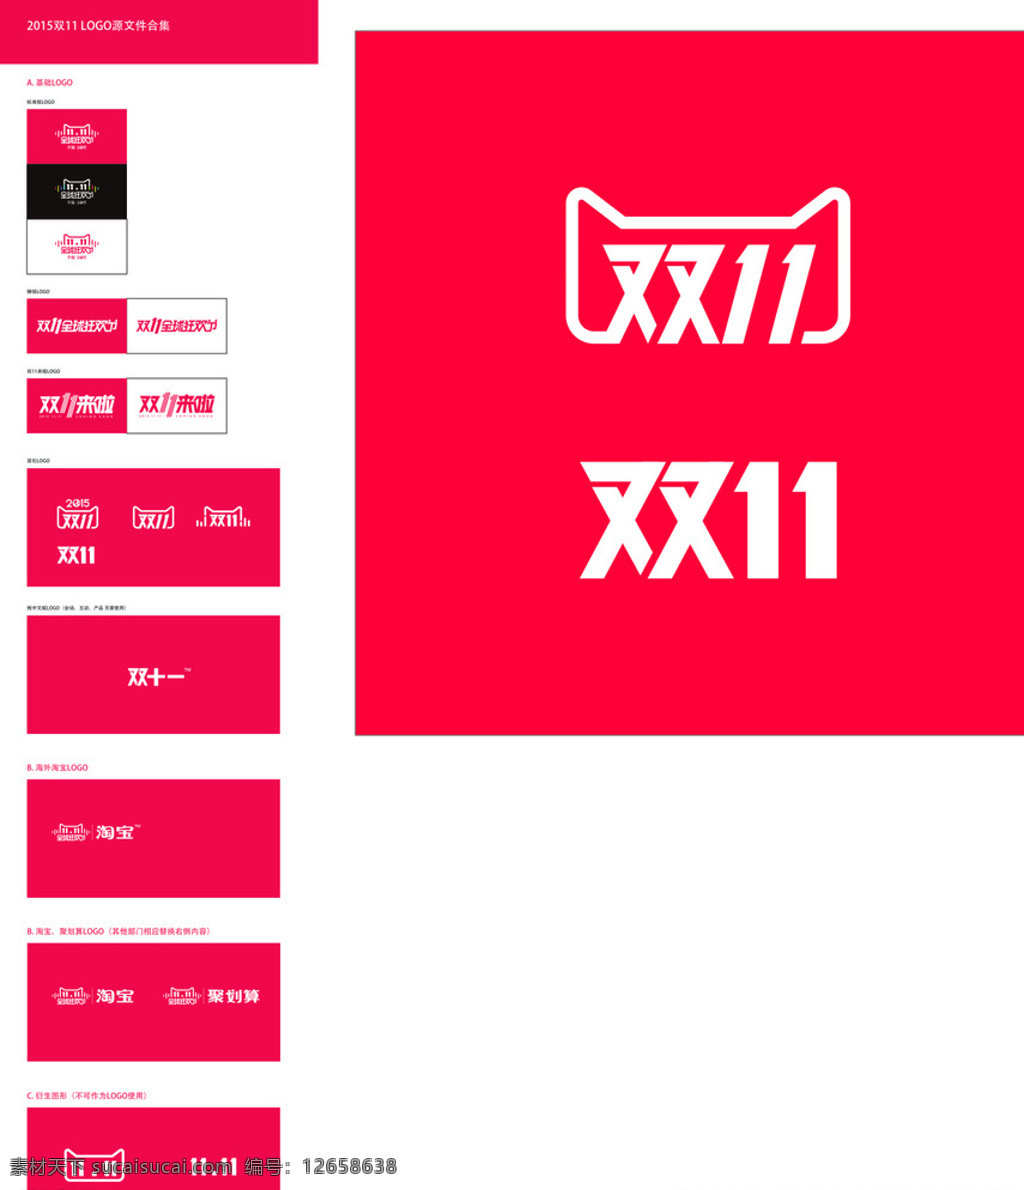 2015 天猫 双 logo 大全 双11 红色